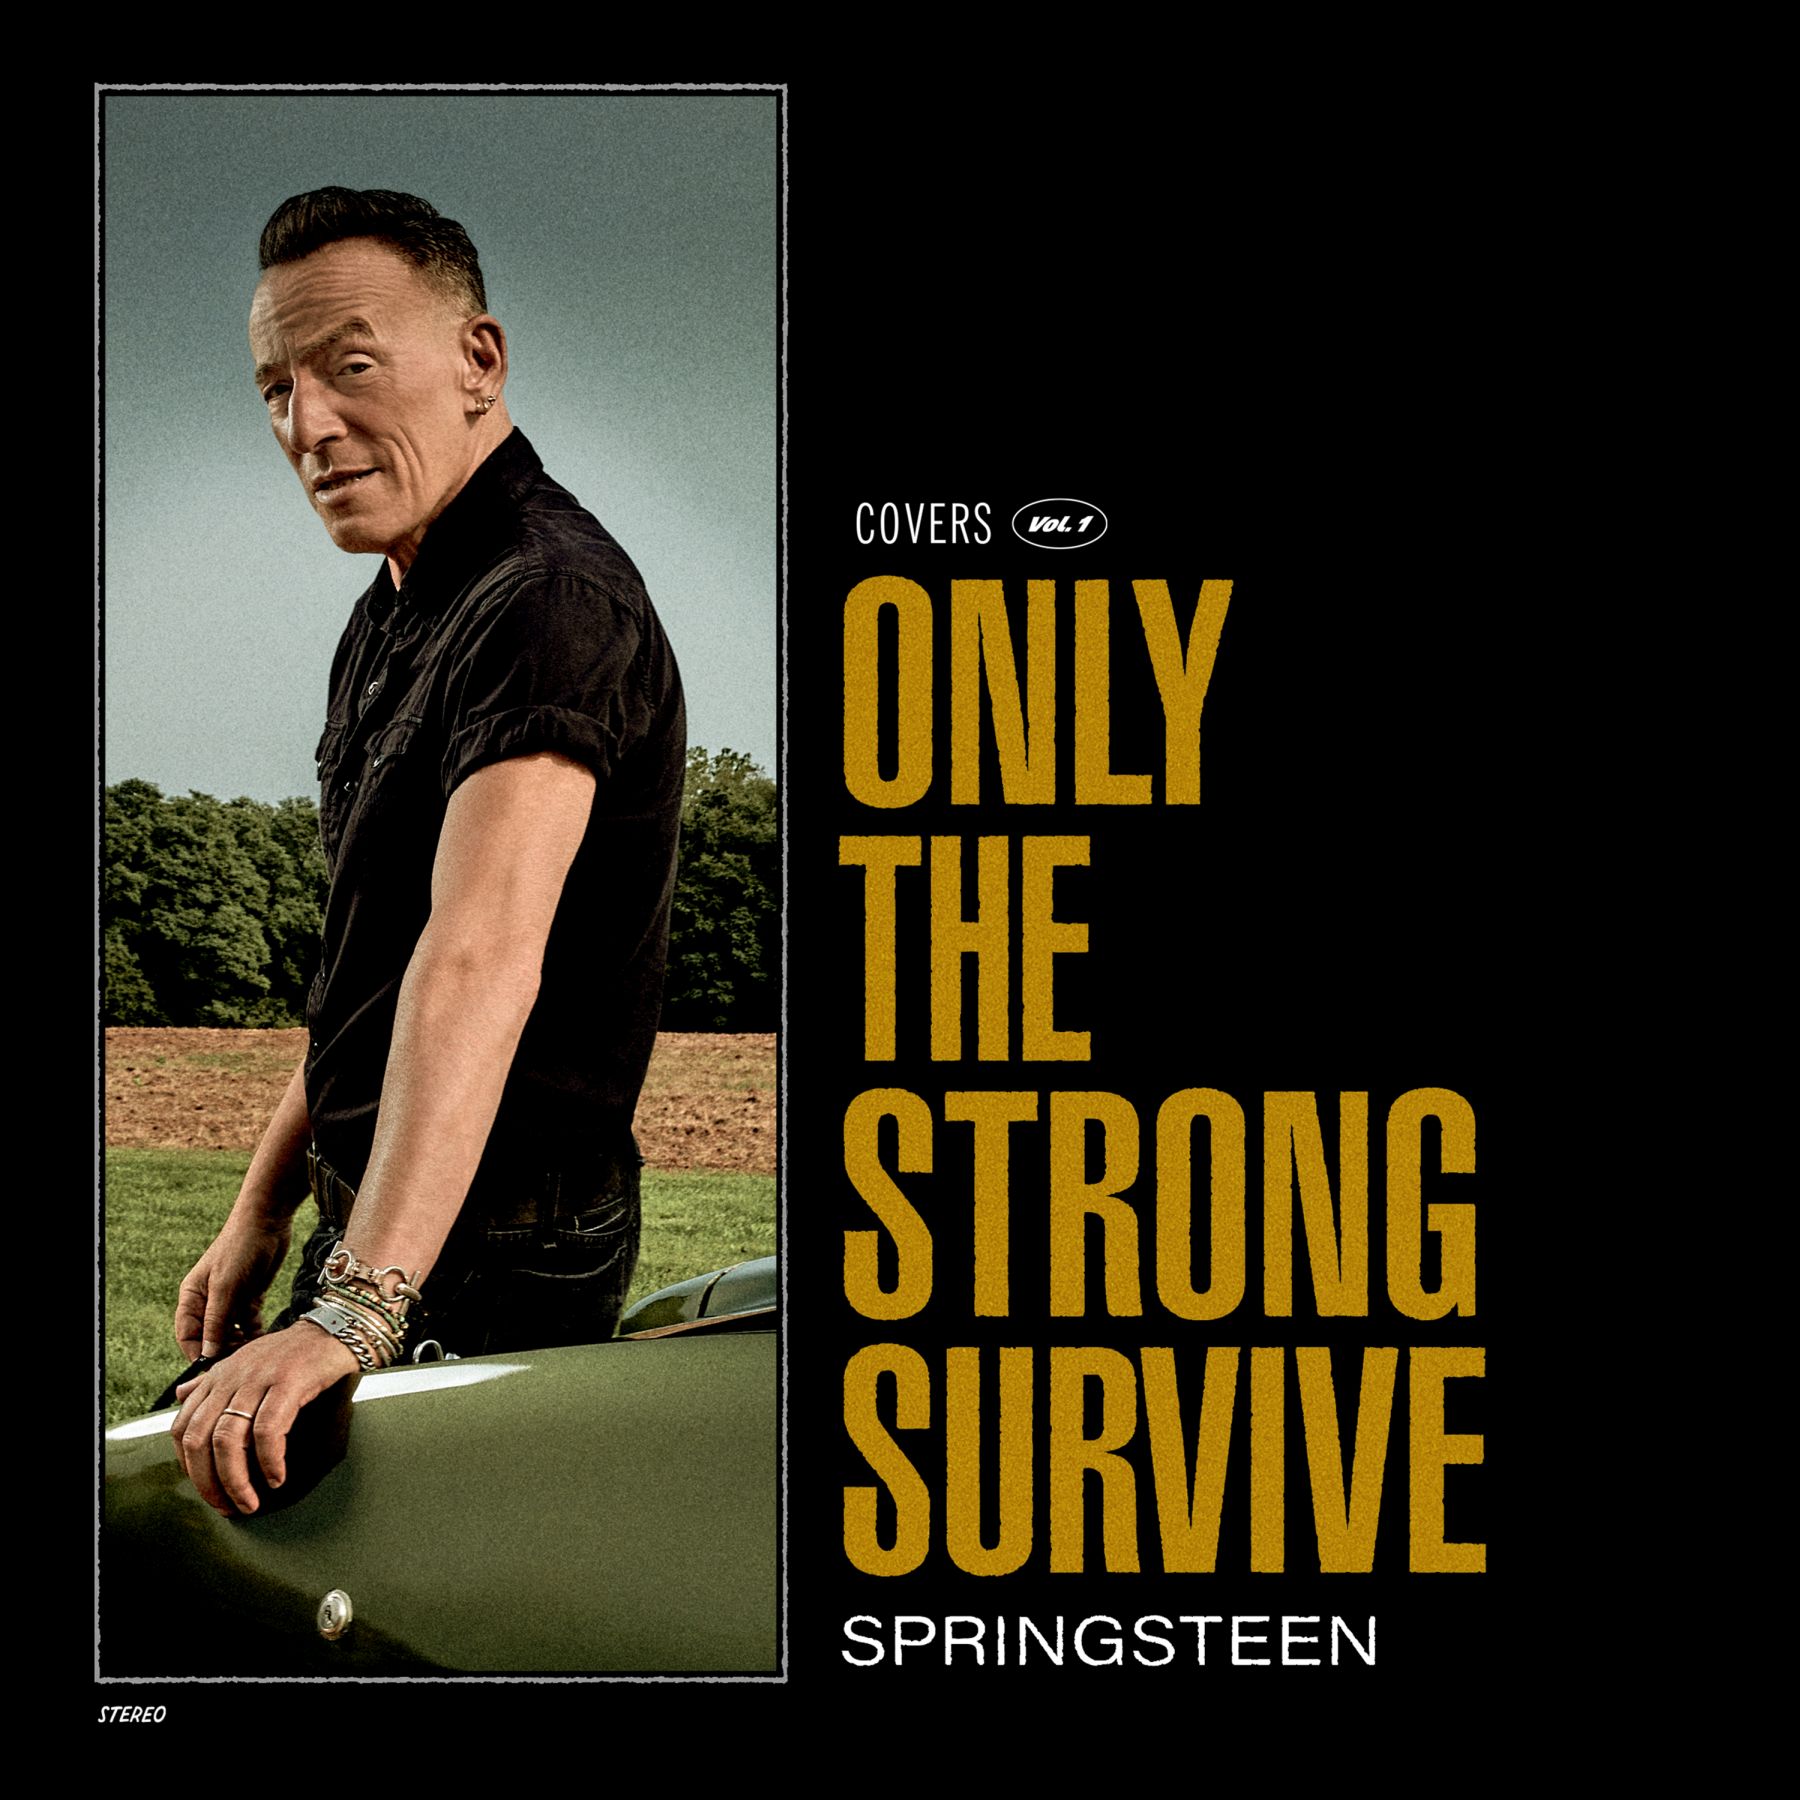 Only The Strong Survive, esce l’11 novembre il nuovo disco di Bruce Springsteen, 15 successi soul rivisti dal Boss